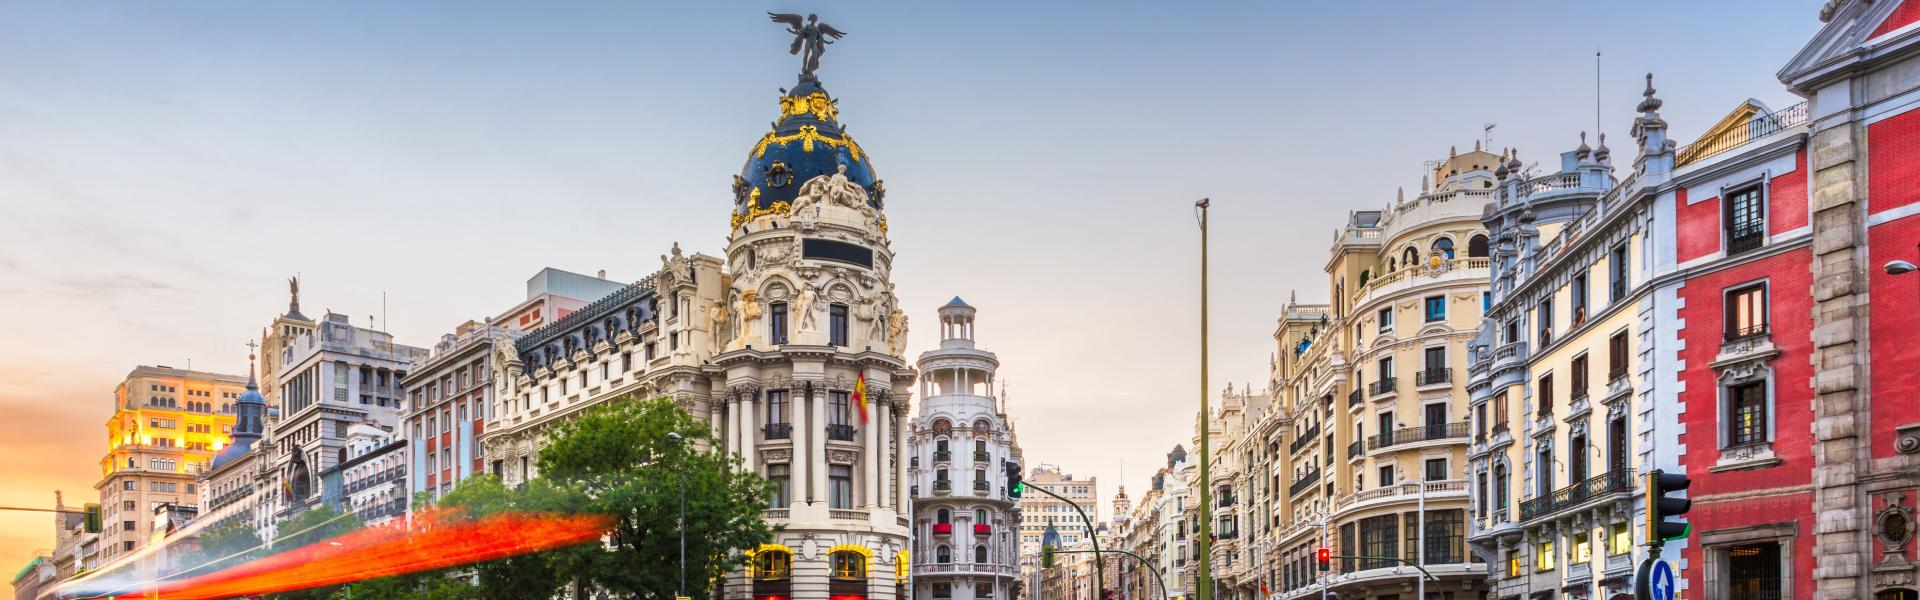 Profitez au maximum de votre séjour à Madrid!